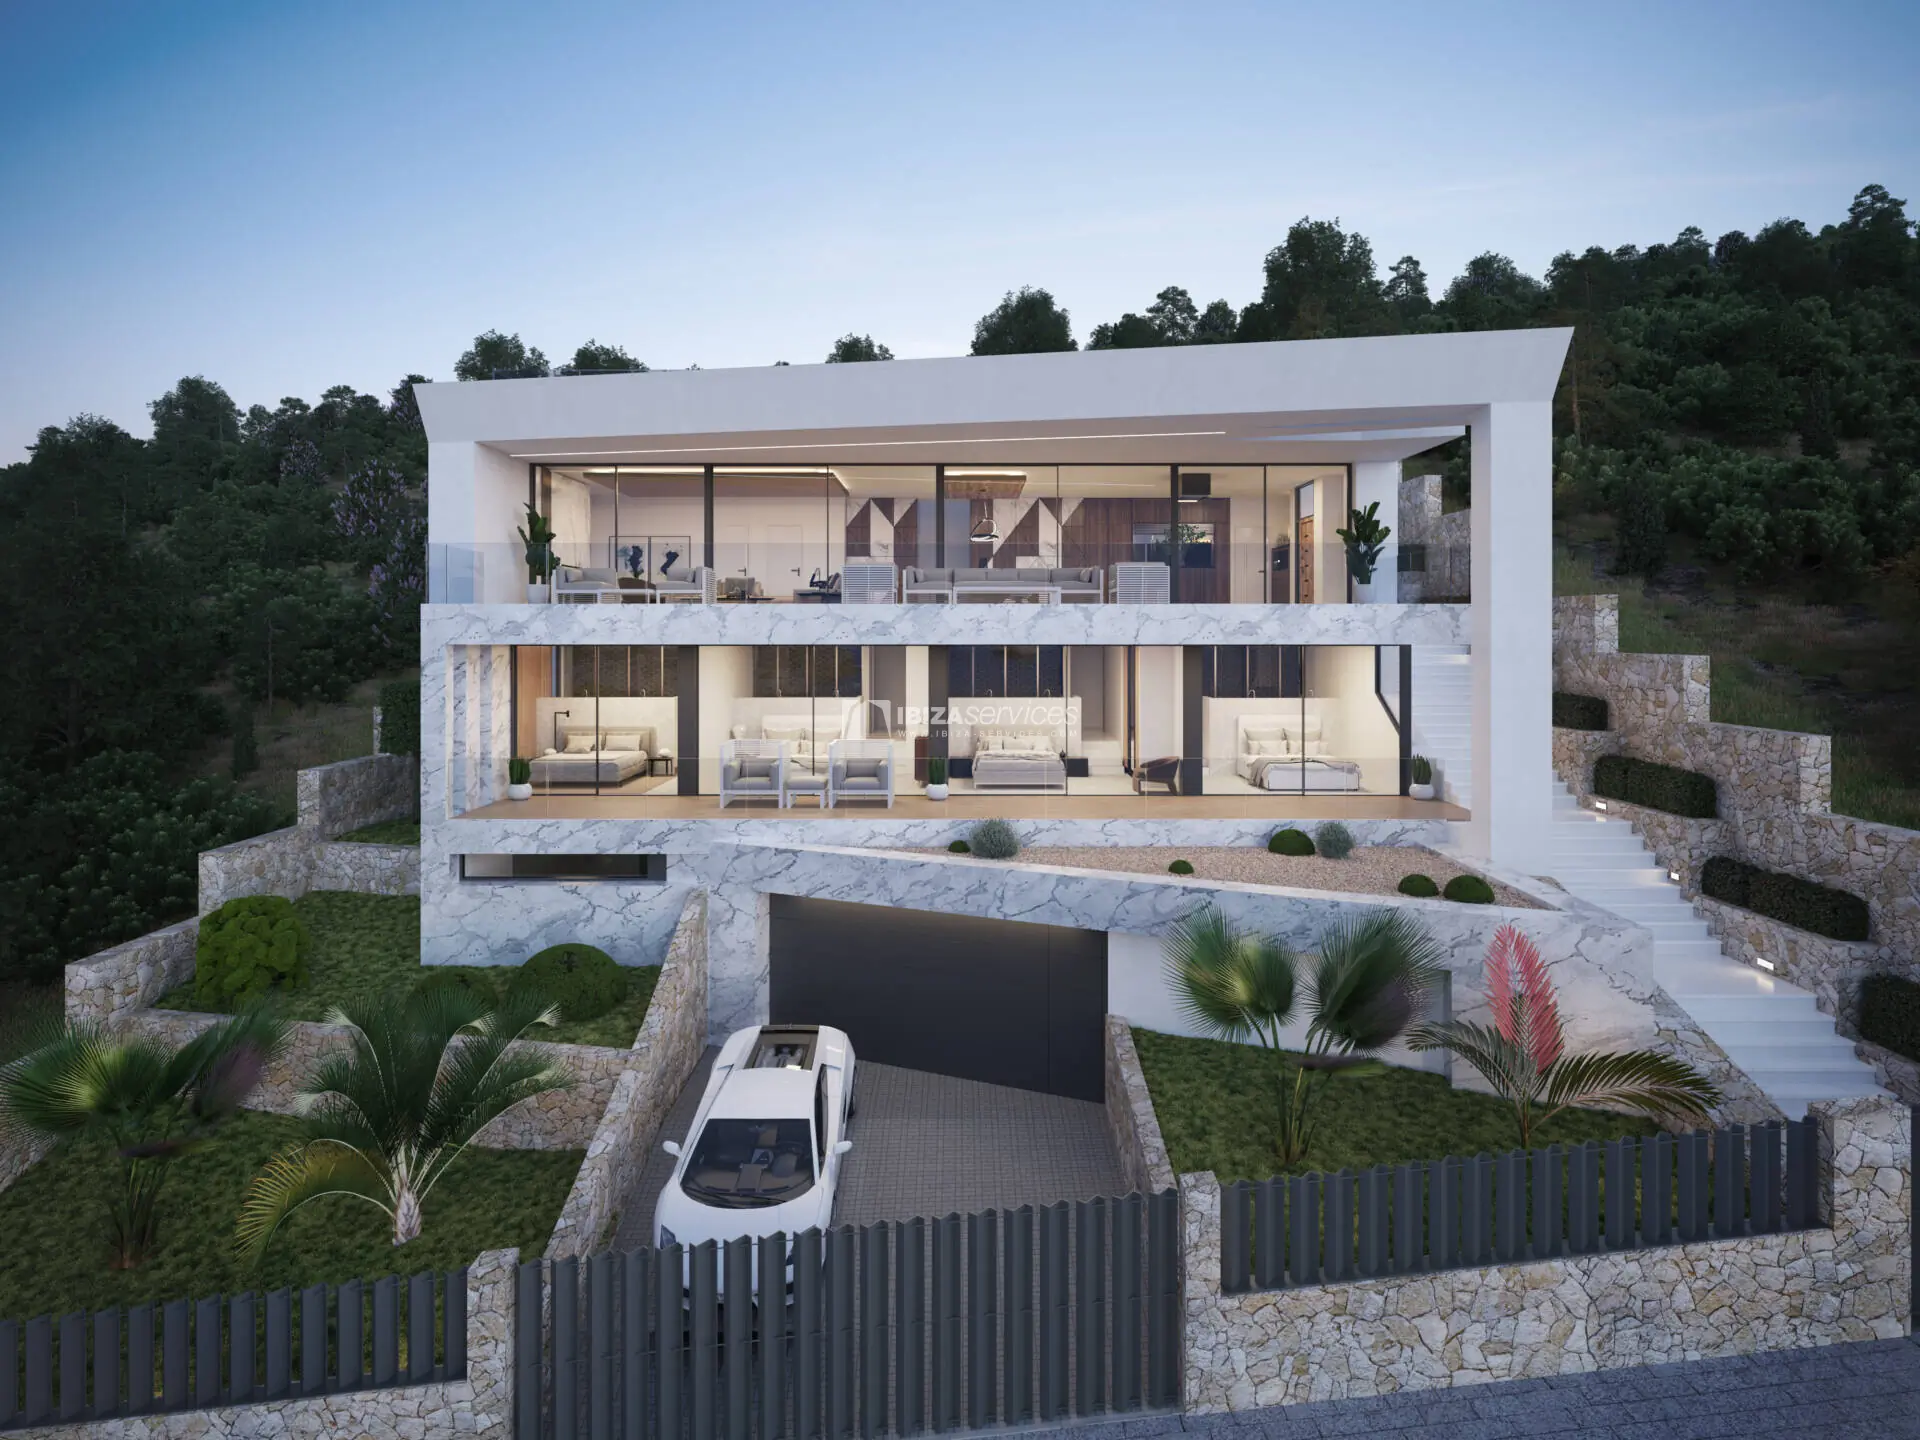 Villa de luxe avec vue imprenable sur la mer Méditerranée à acheter